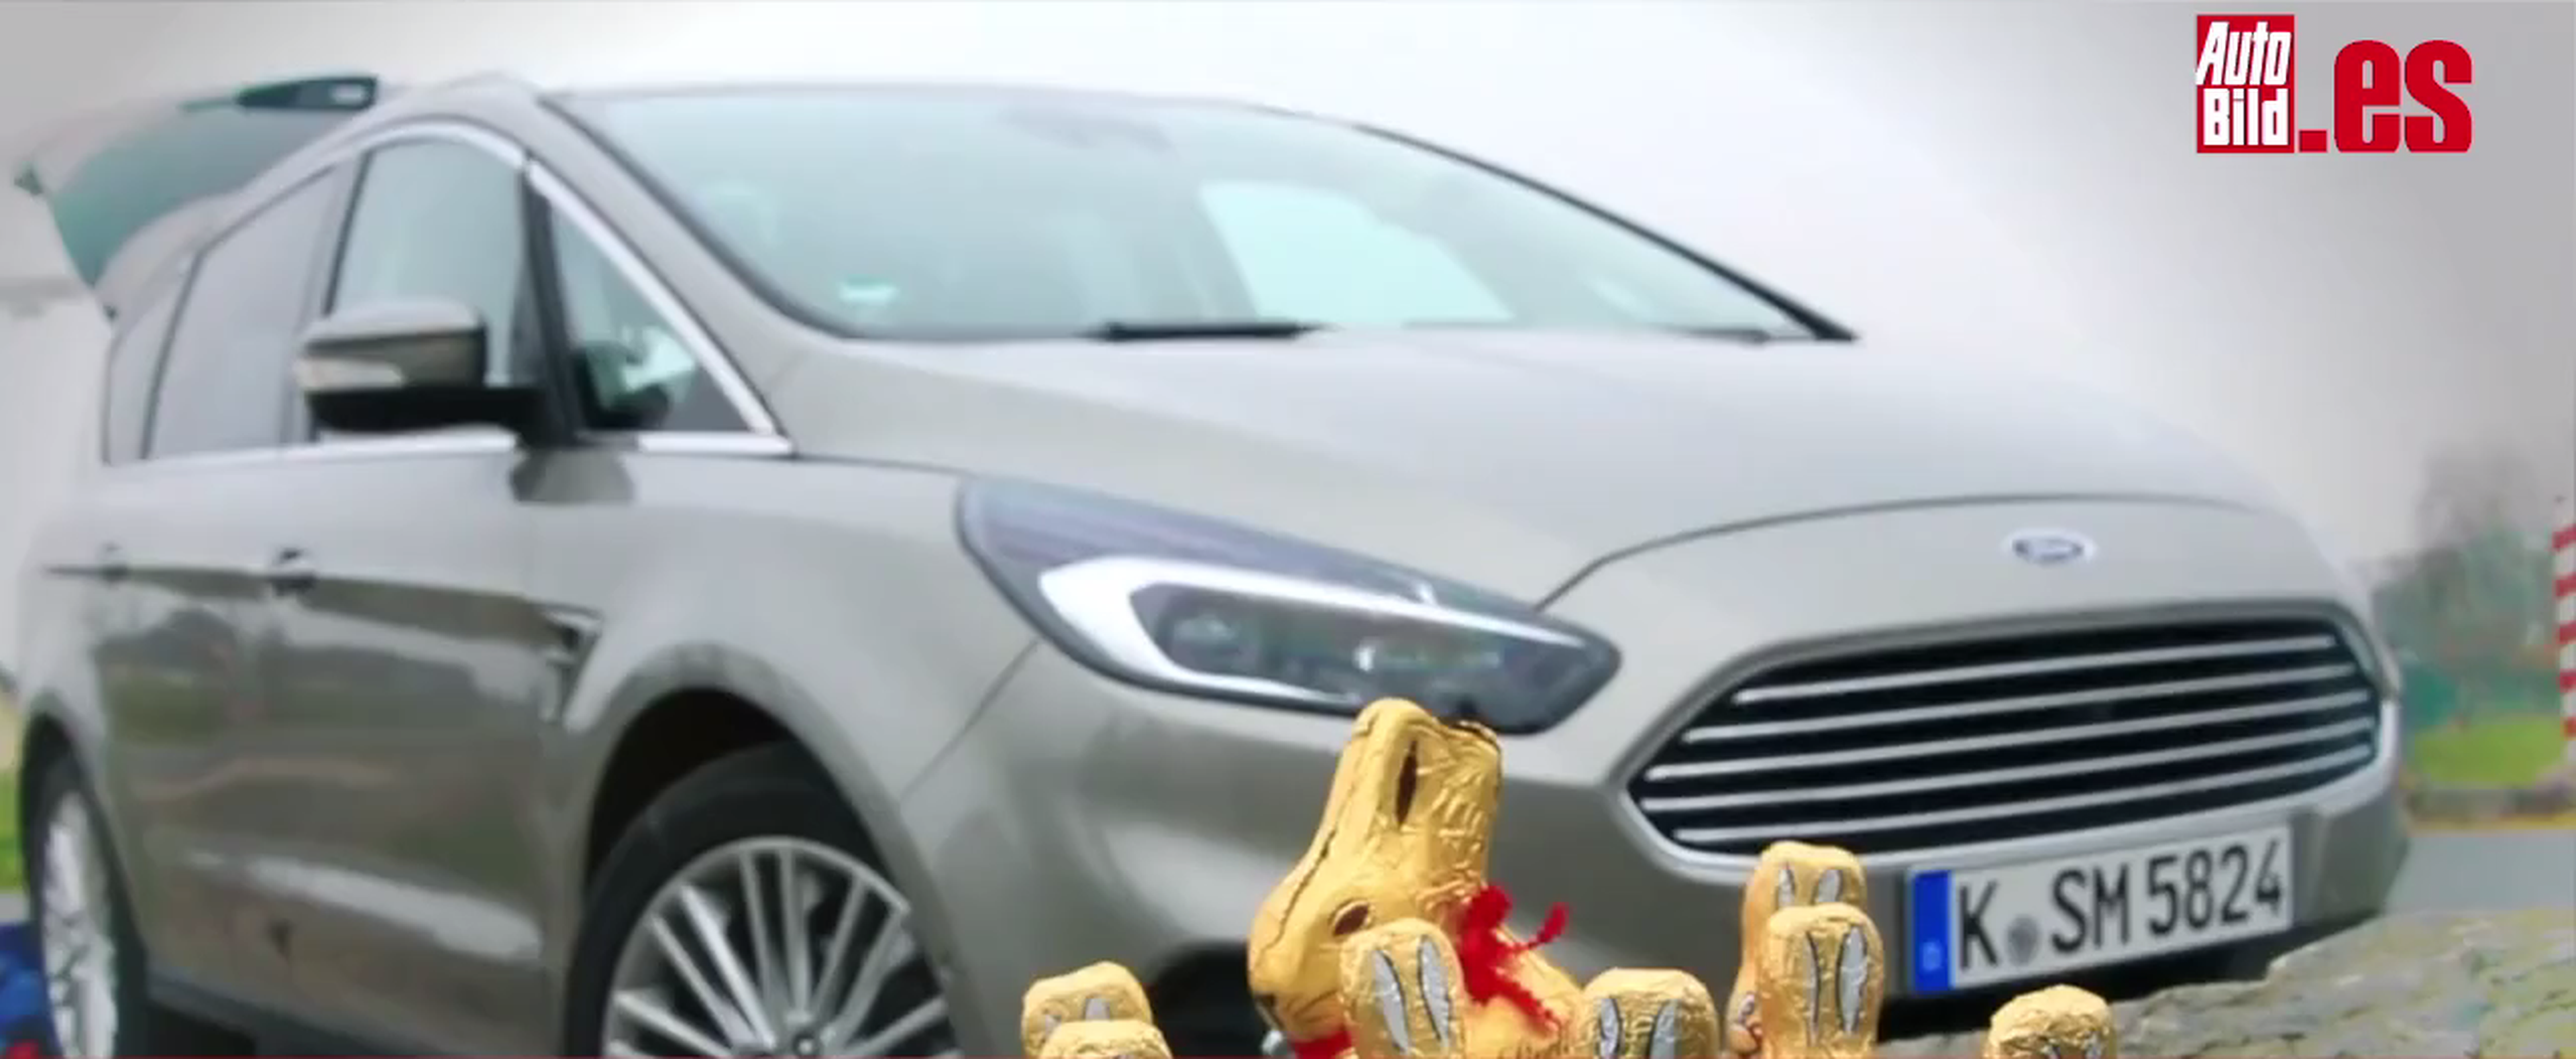 Reto de Pascua: encontrar chocolatinas en un Ford S-Max